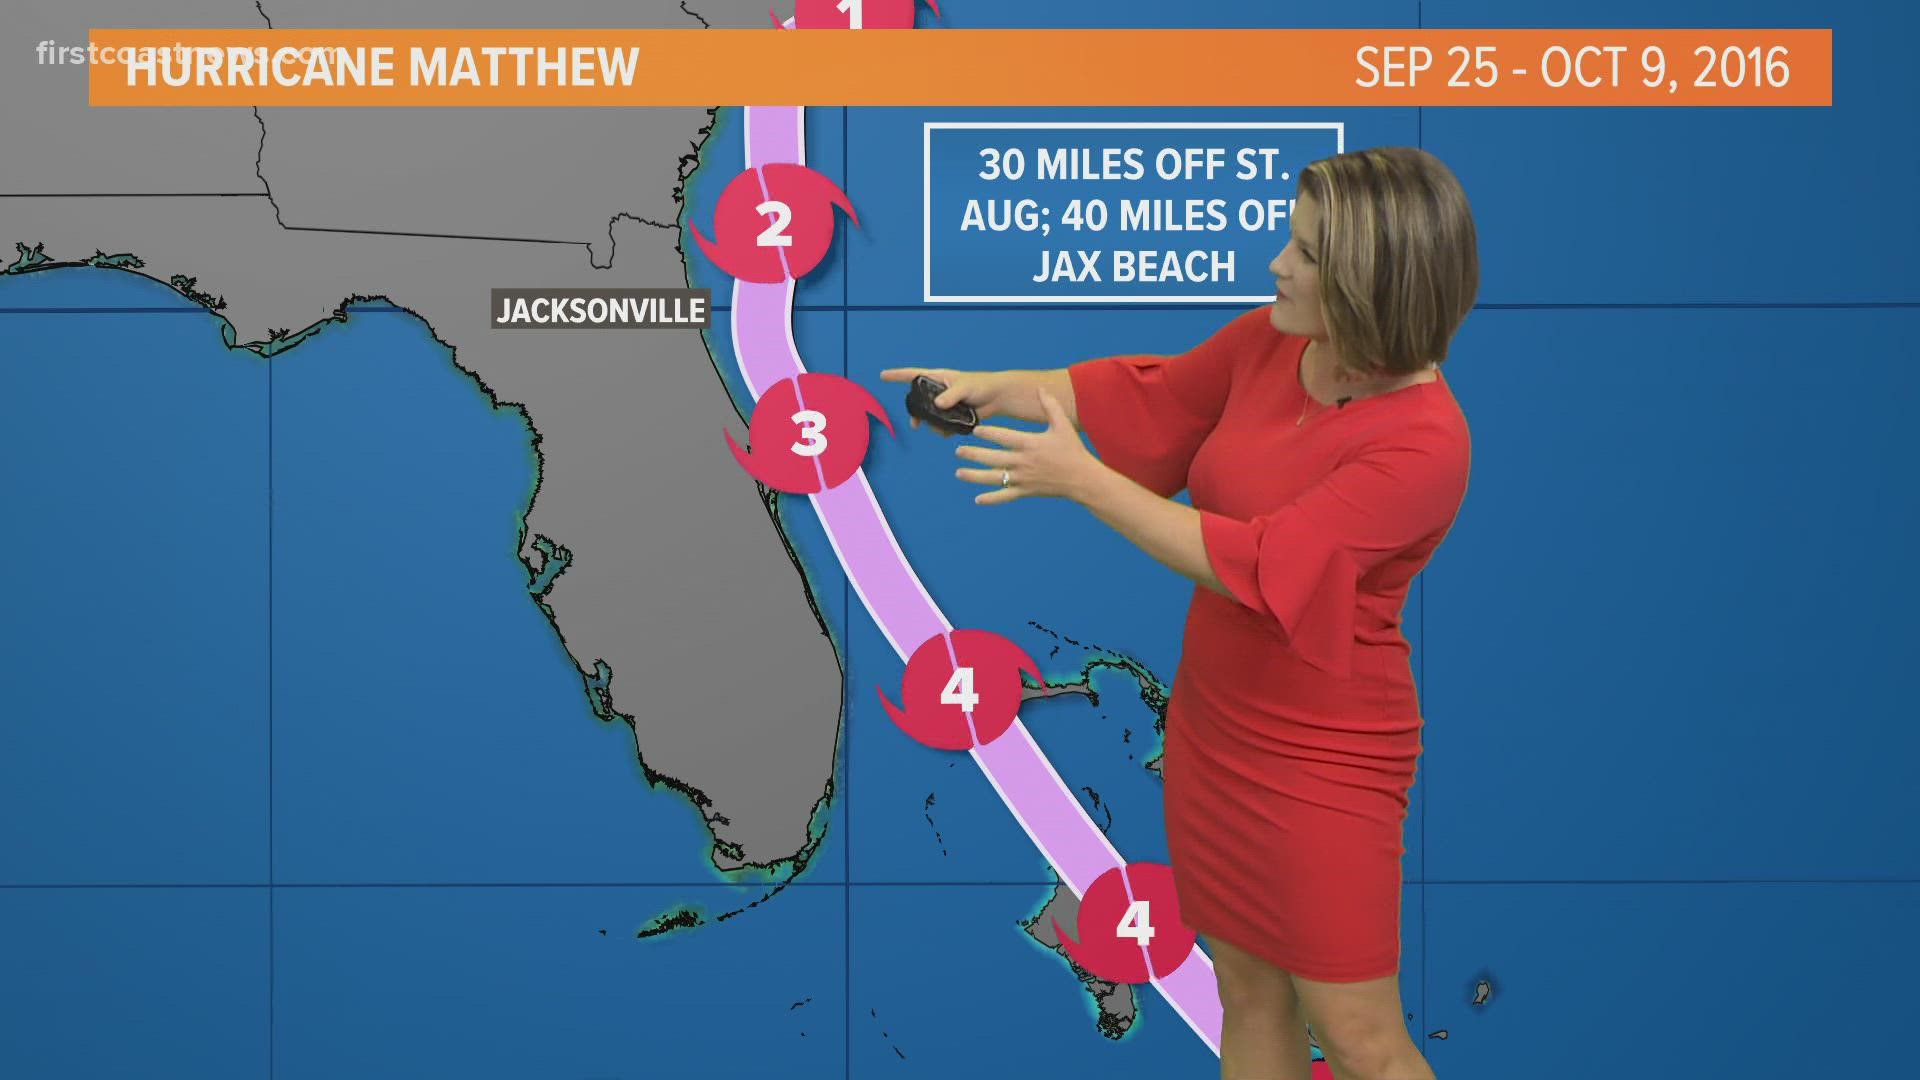 Meteorologist Lauren Rautenkranz recaps Hurricane Matthew's track from 2016